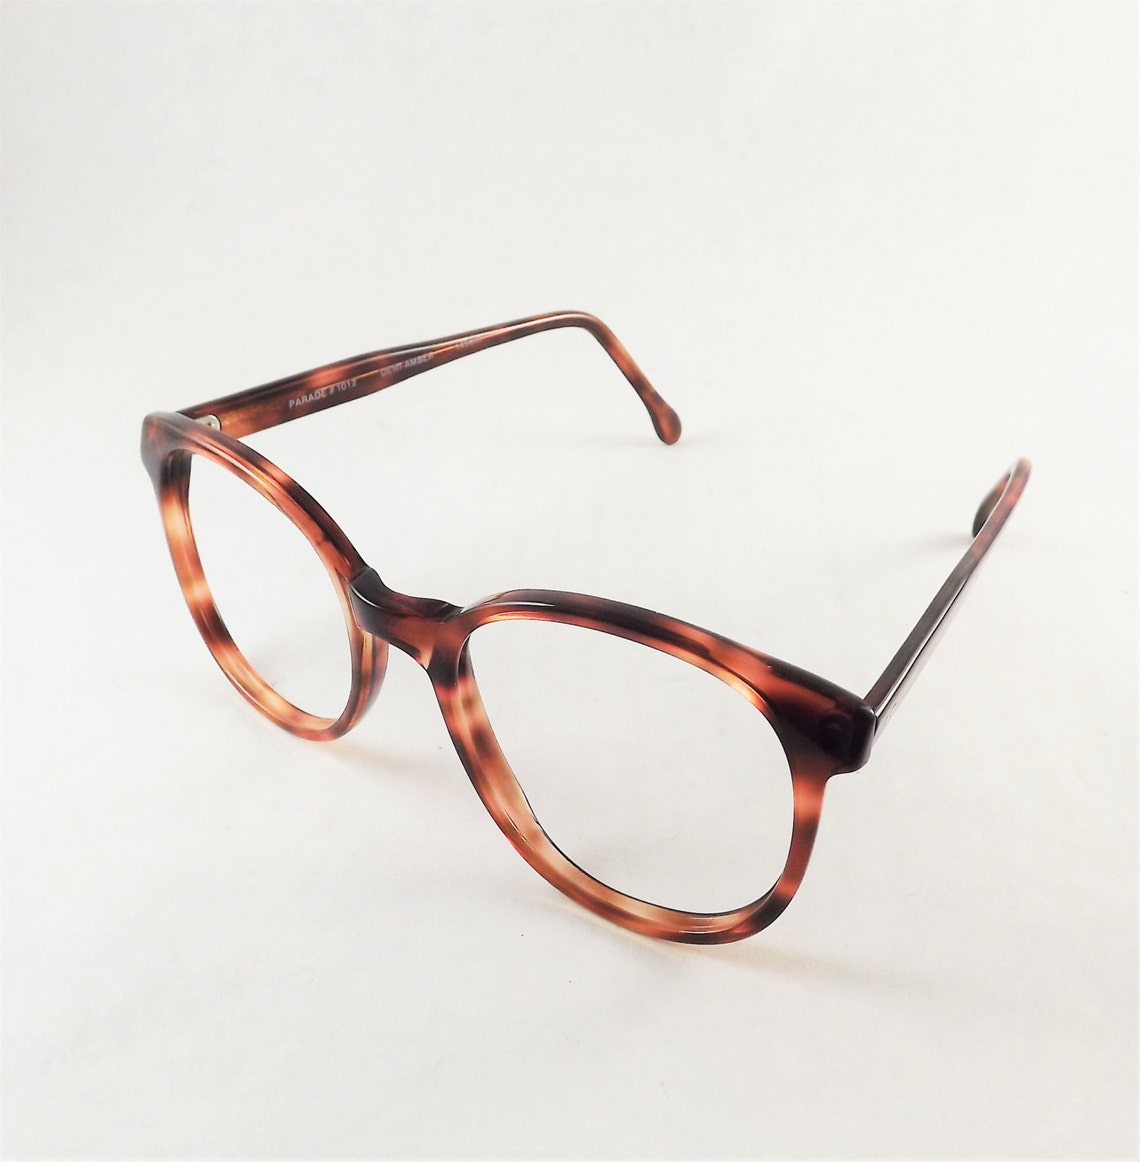 Tortoise Shell Eyeglasses 1980s Glasses Frame Women Brown | Etsy